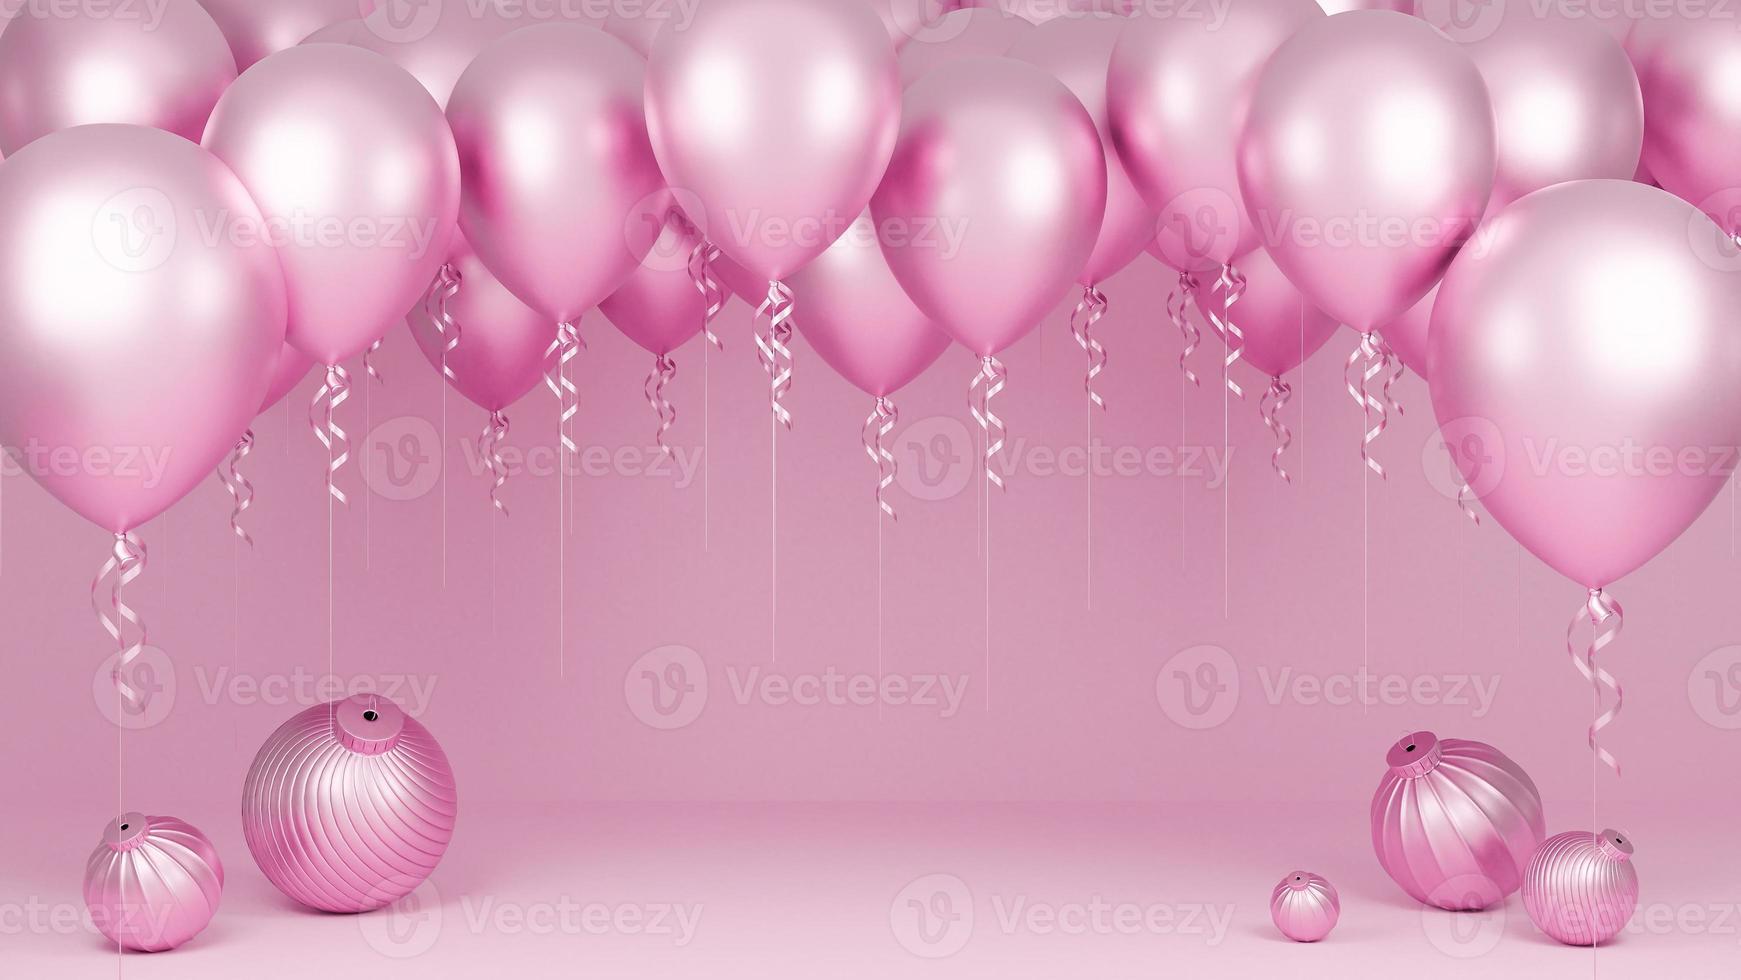 globos rosas flotando en fondo rosa pastel.fiesta de cumpleaños y concepto  de año nuevo. modelo 3d e ilustración. 6860715 Foto de stock en Vecteezy